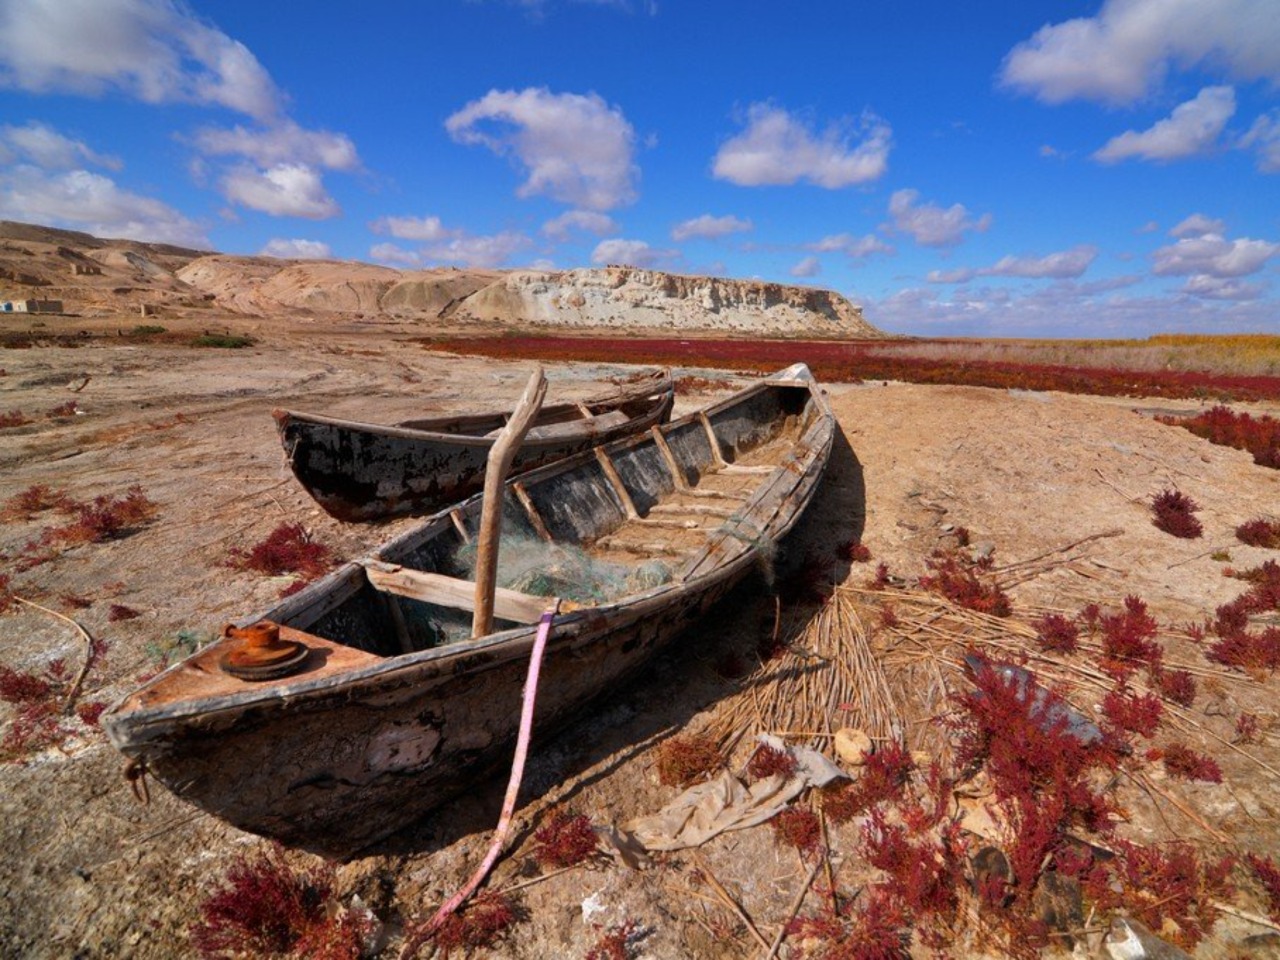 “Застывшая мелодия”: тур к Аральскому морю | Цена 900€, отзывы, описание экскурсии